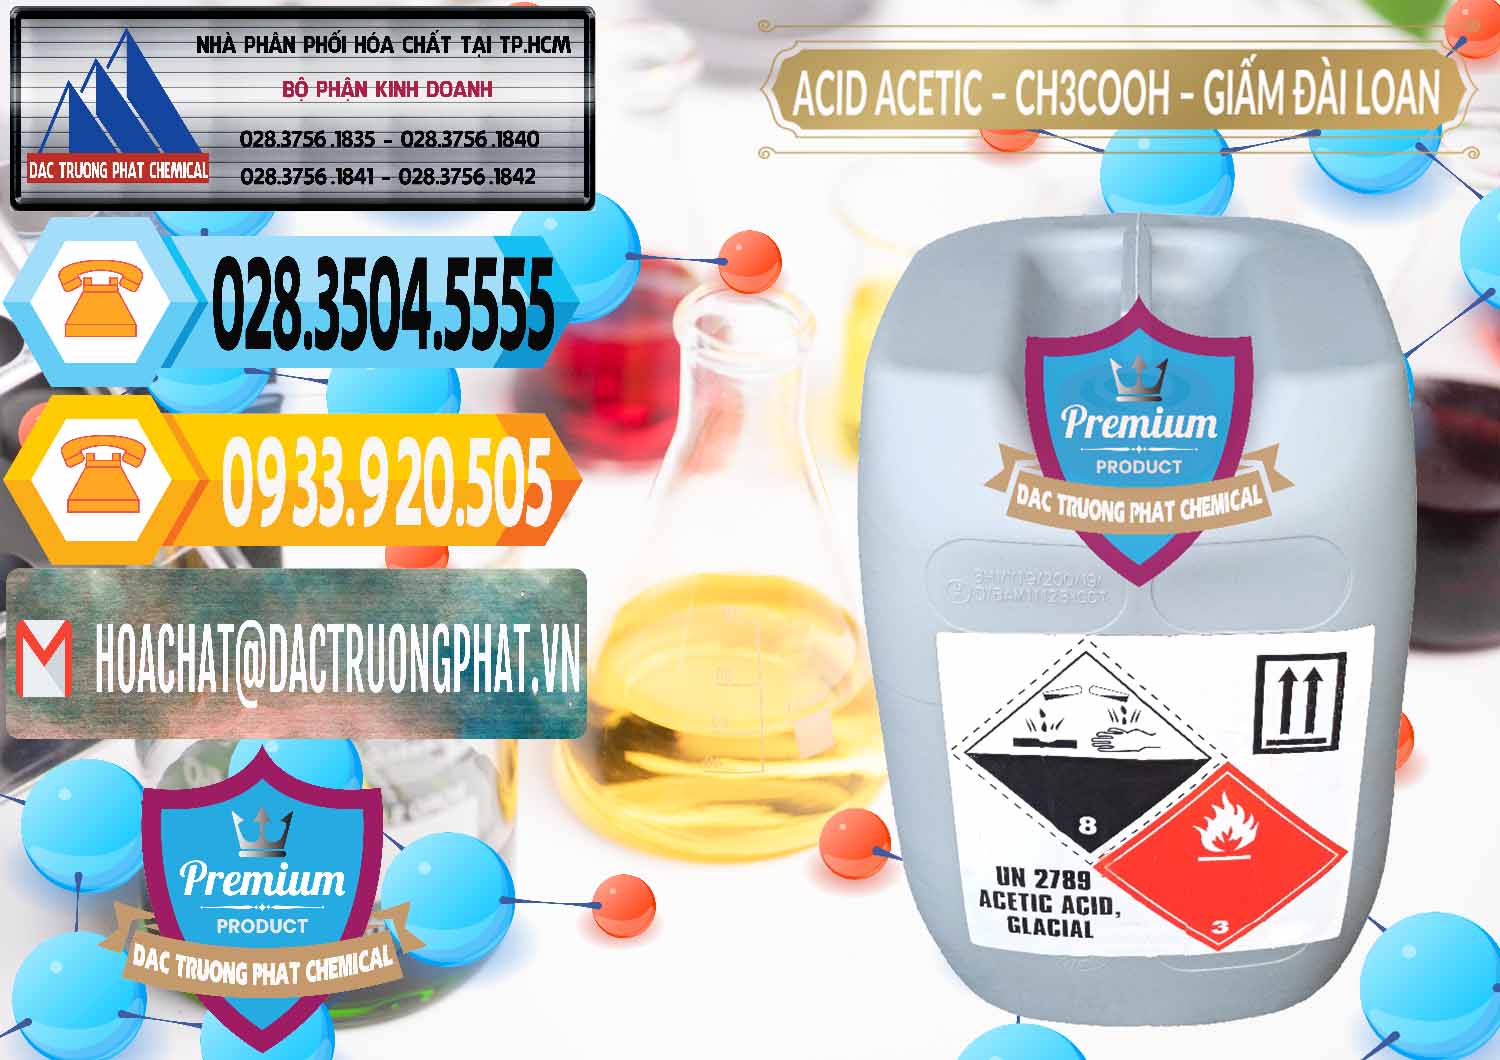 Chuyên bán & phân phối Acetic Acid – Axit Acetic Chang Chun Đài Loan Taiwan - 0001 - Công ty chuyên nhập khẩu _ phân phối hóa chất tại TP.HCM - hoachattayrua.net